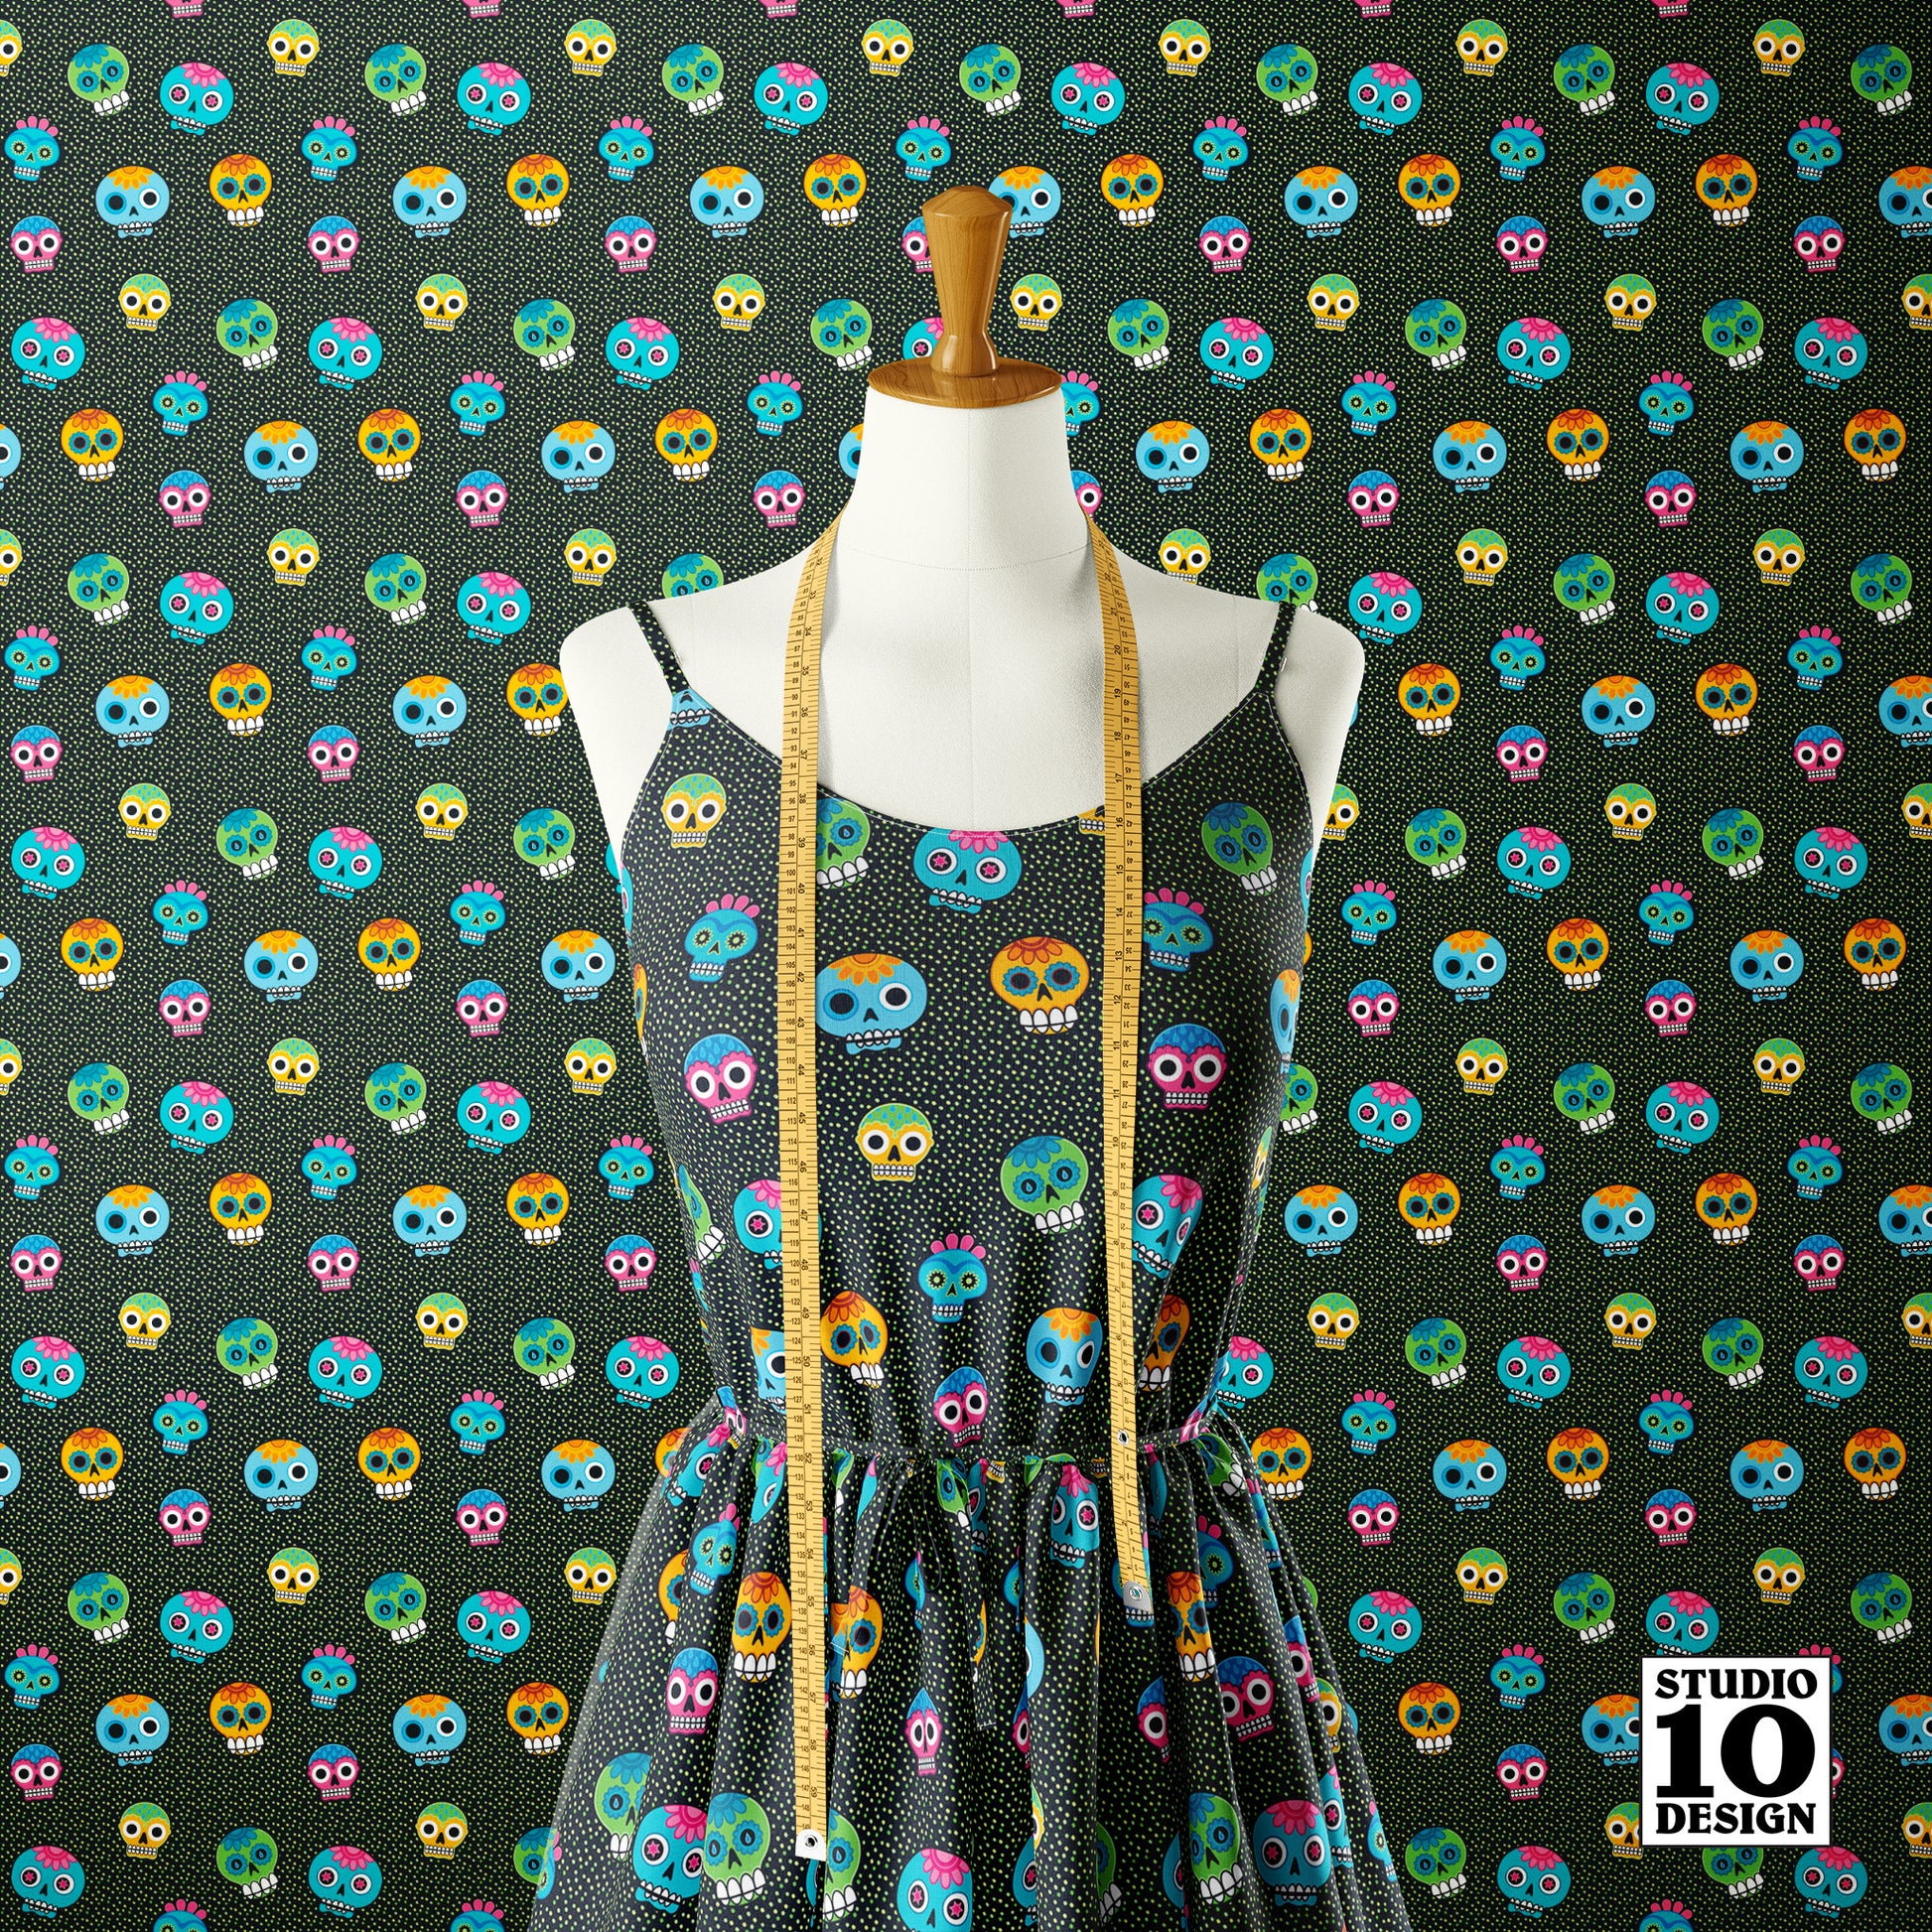 Dia de los Muertos (Green) Printed Fabric by Studio Ten Design